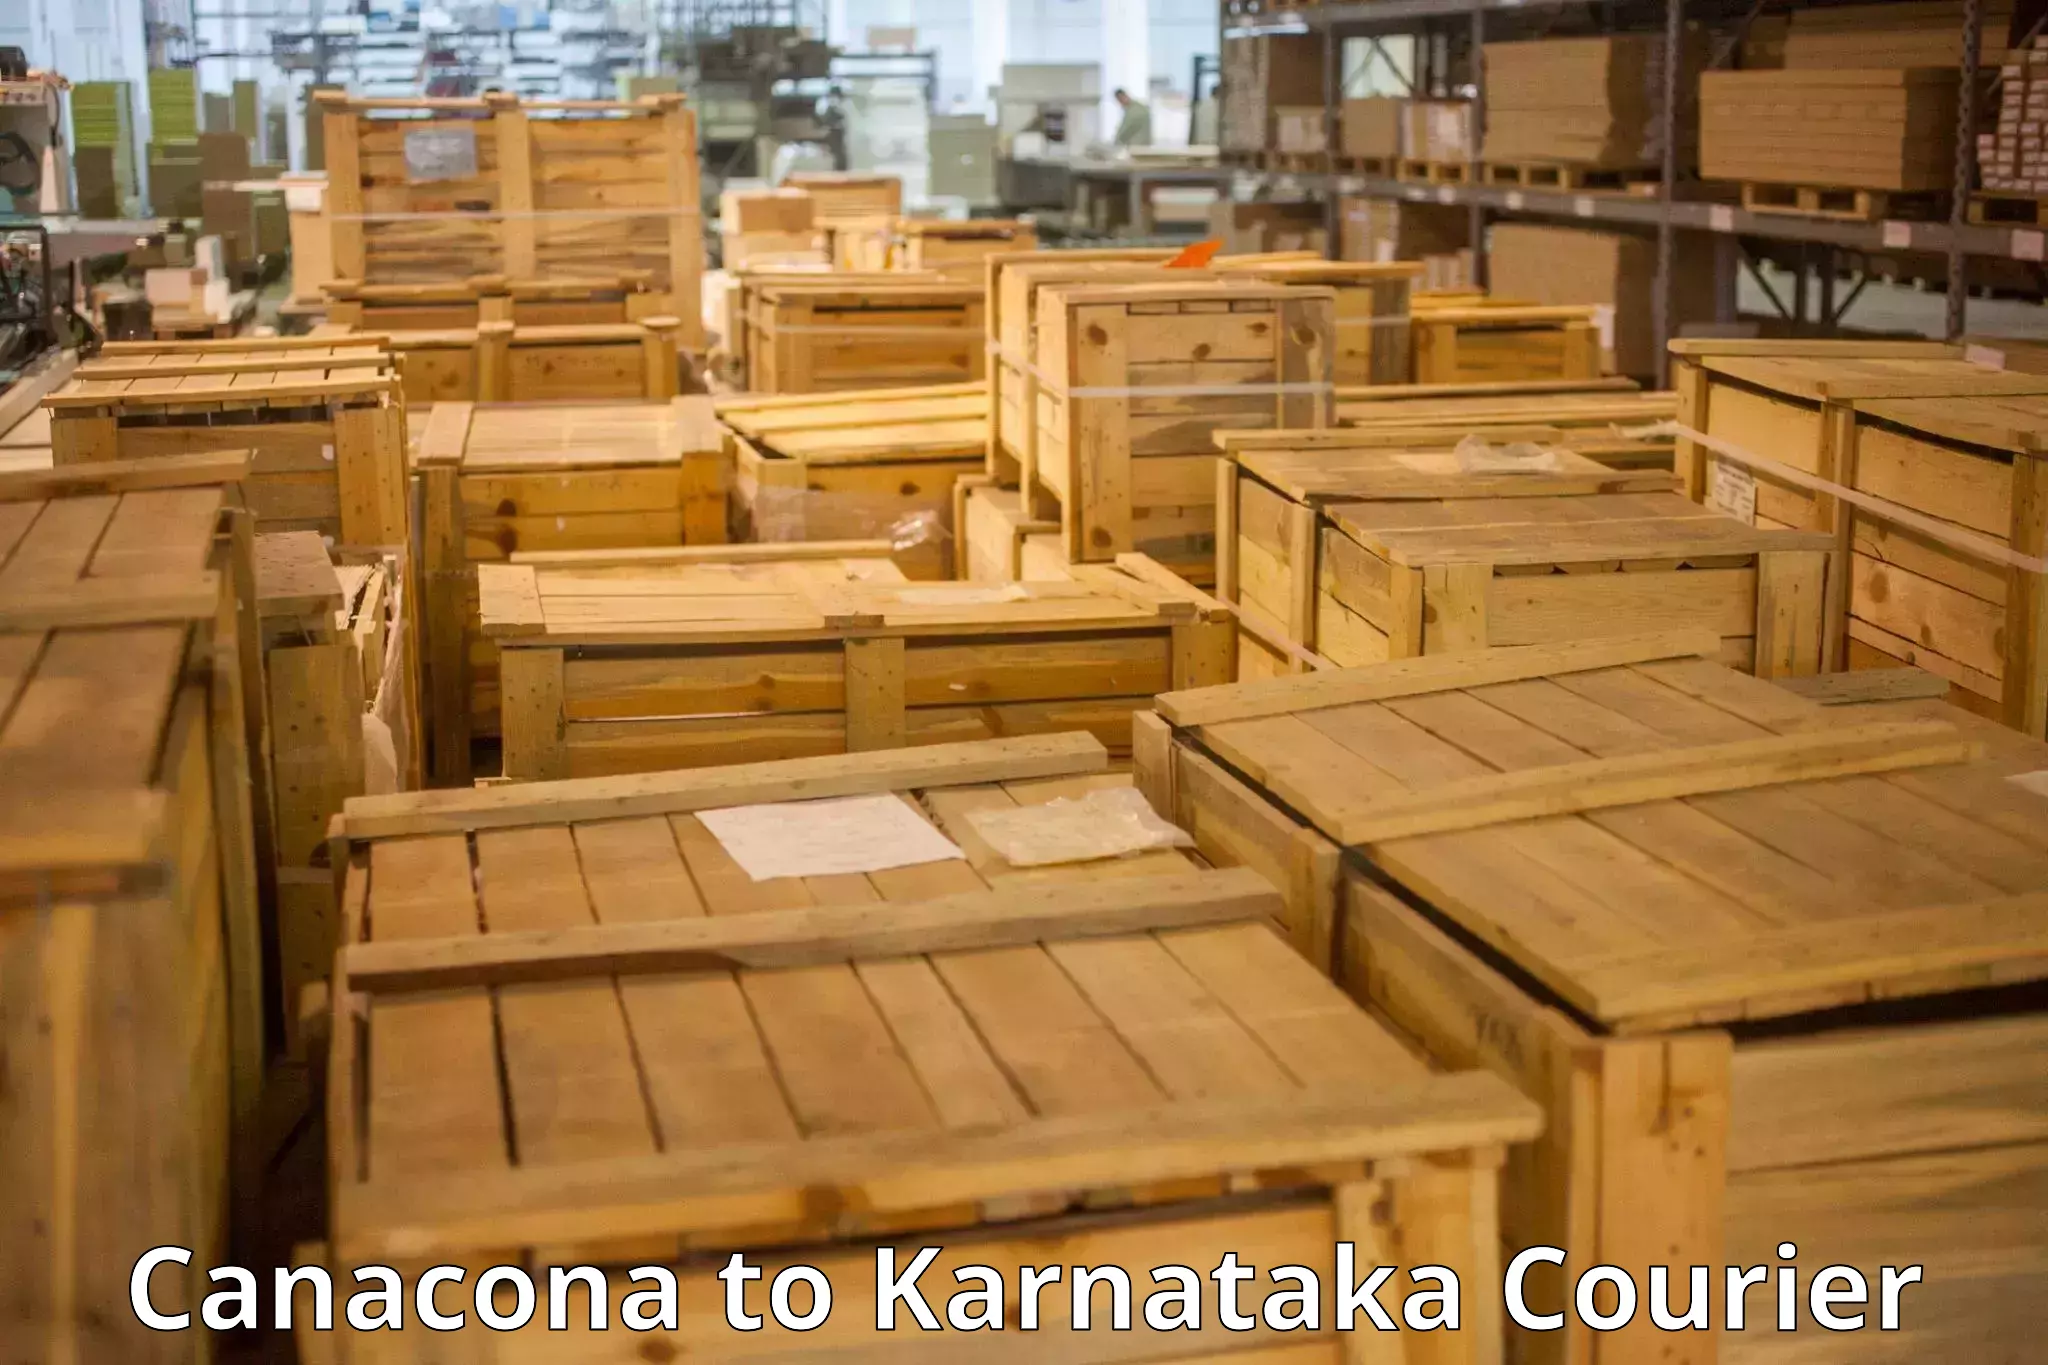 Holiday baggage shipping Canacona to Karnataka